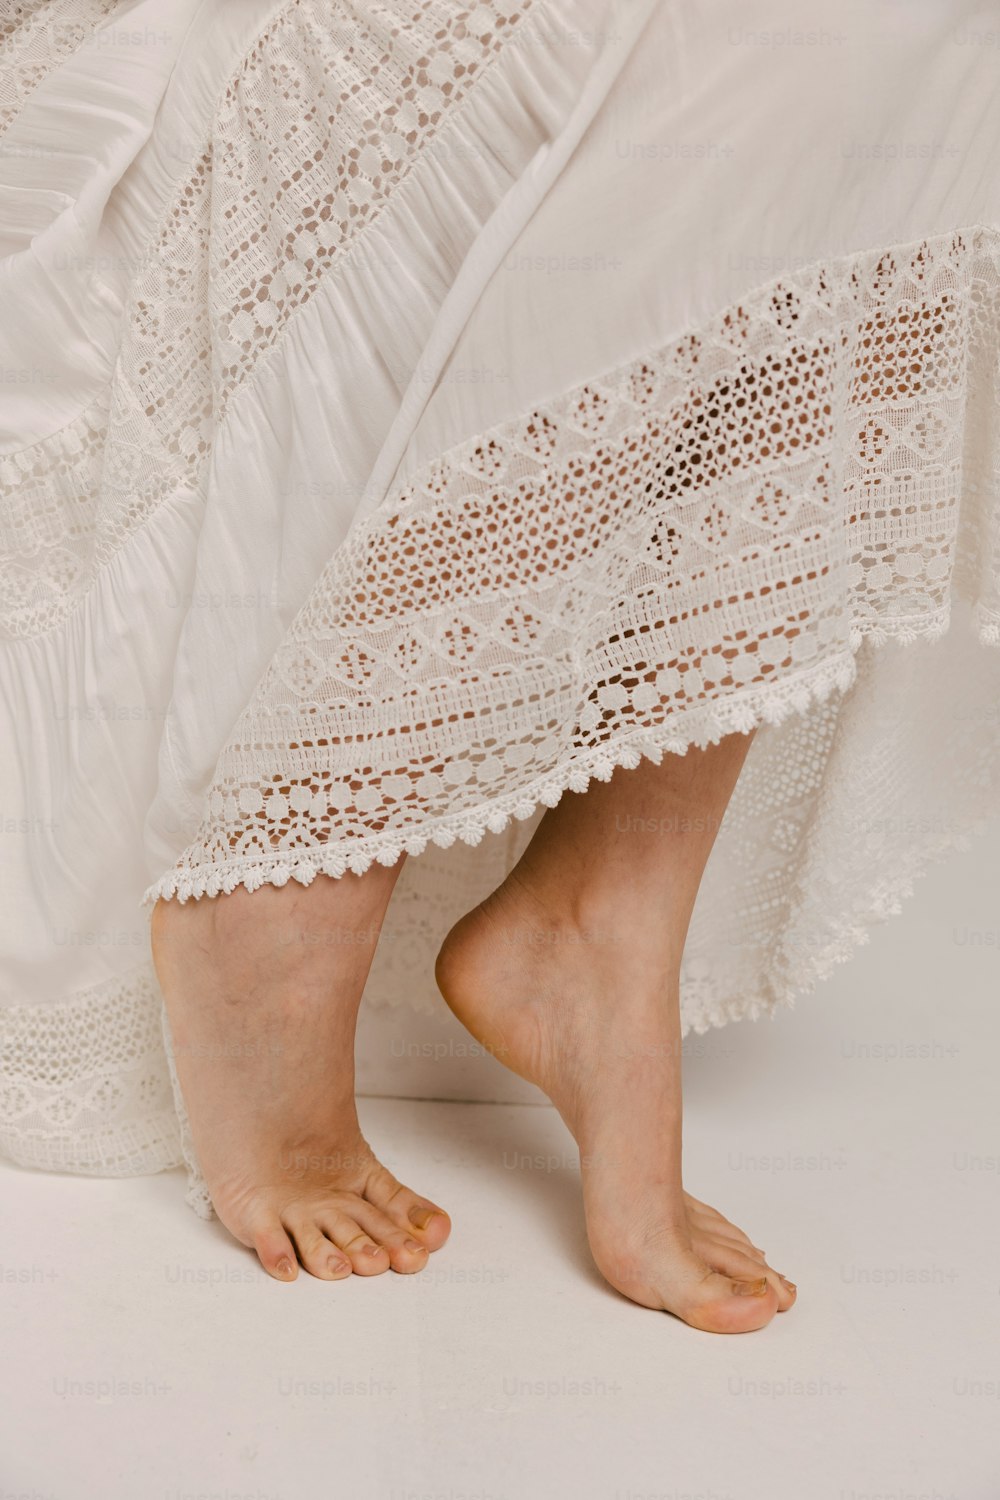 Los pies descalzos de una mujer con un vestido blanco